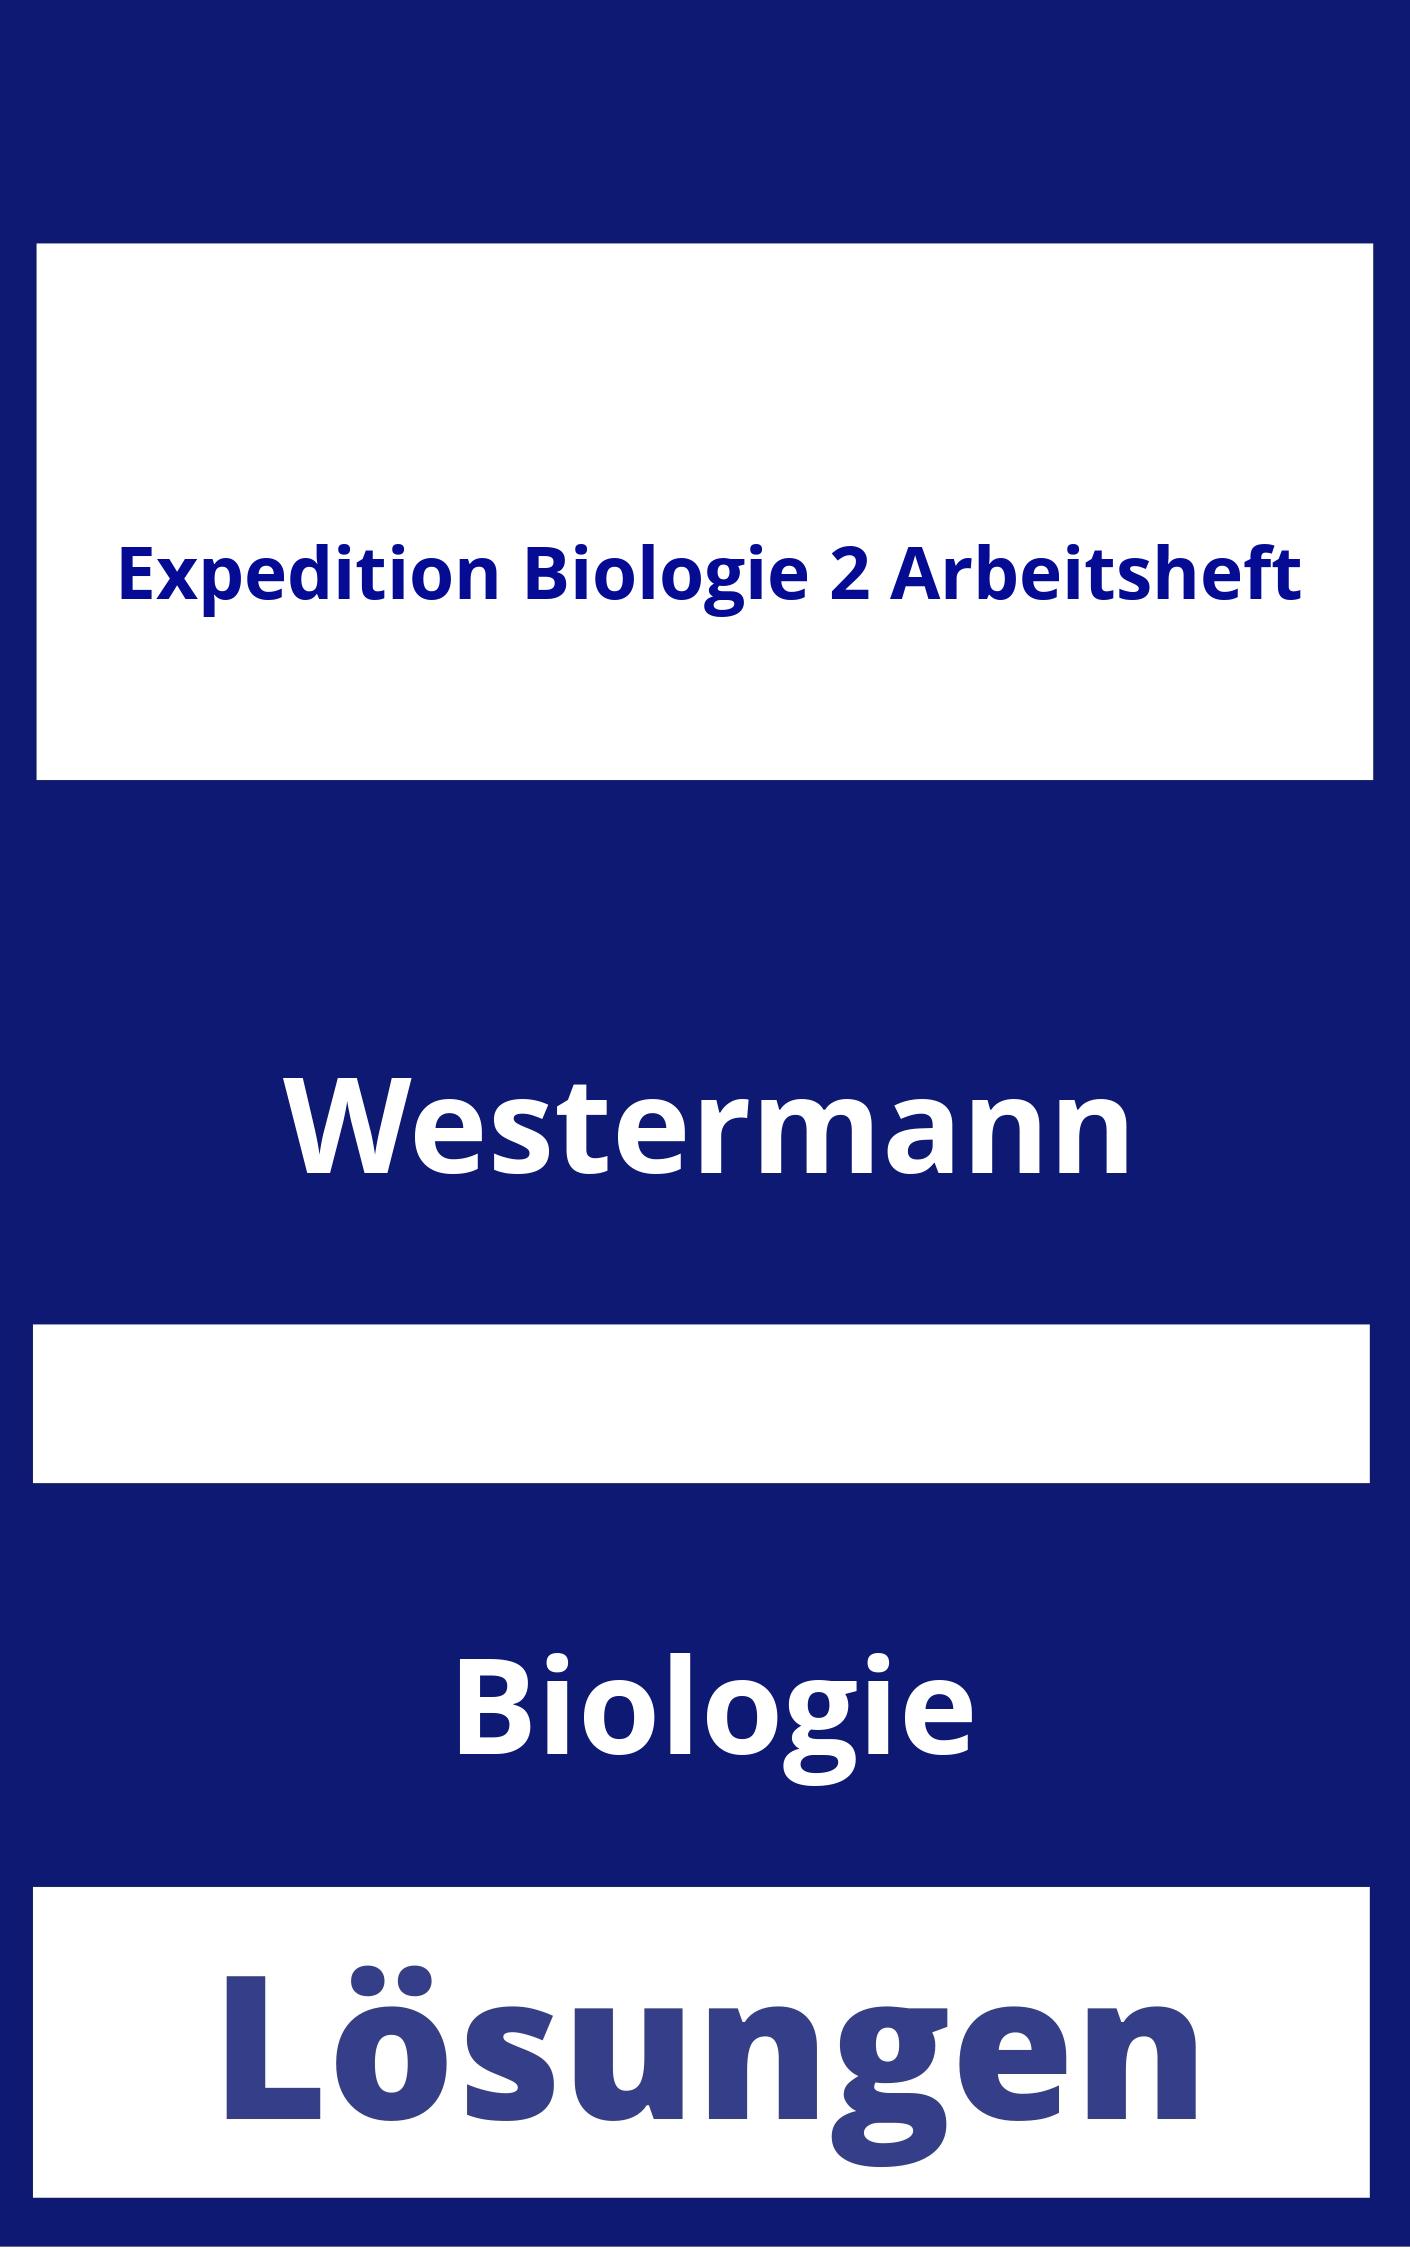 Expedition Biologie 2 Arbeitsheft Lösungen PDF